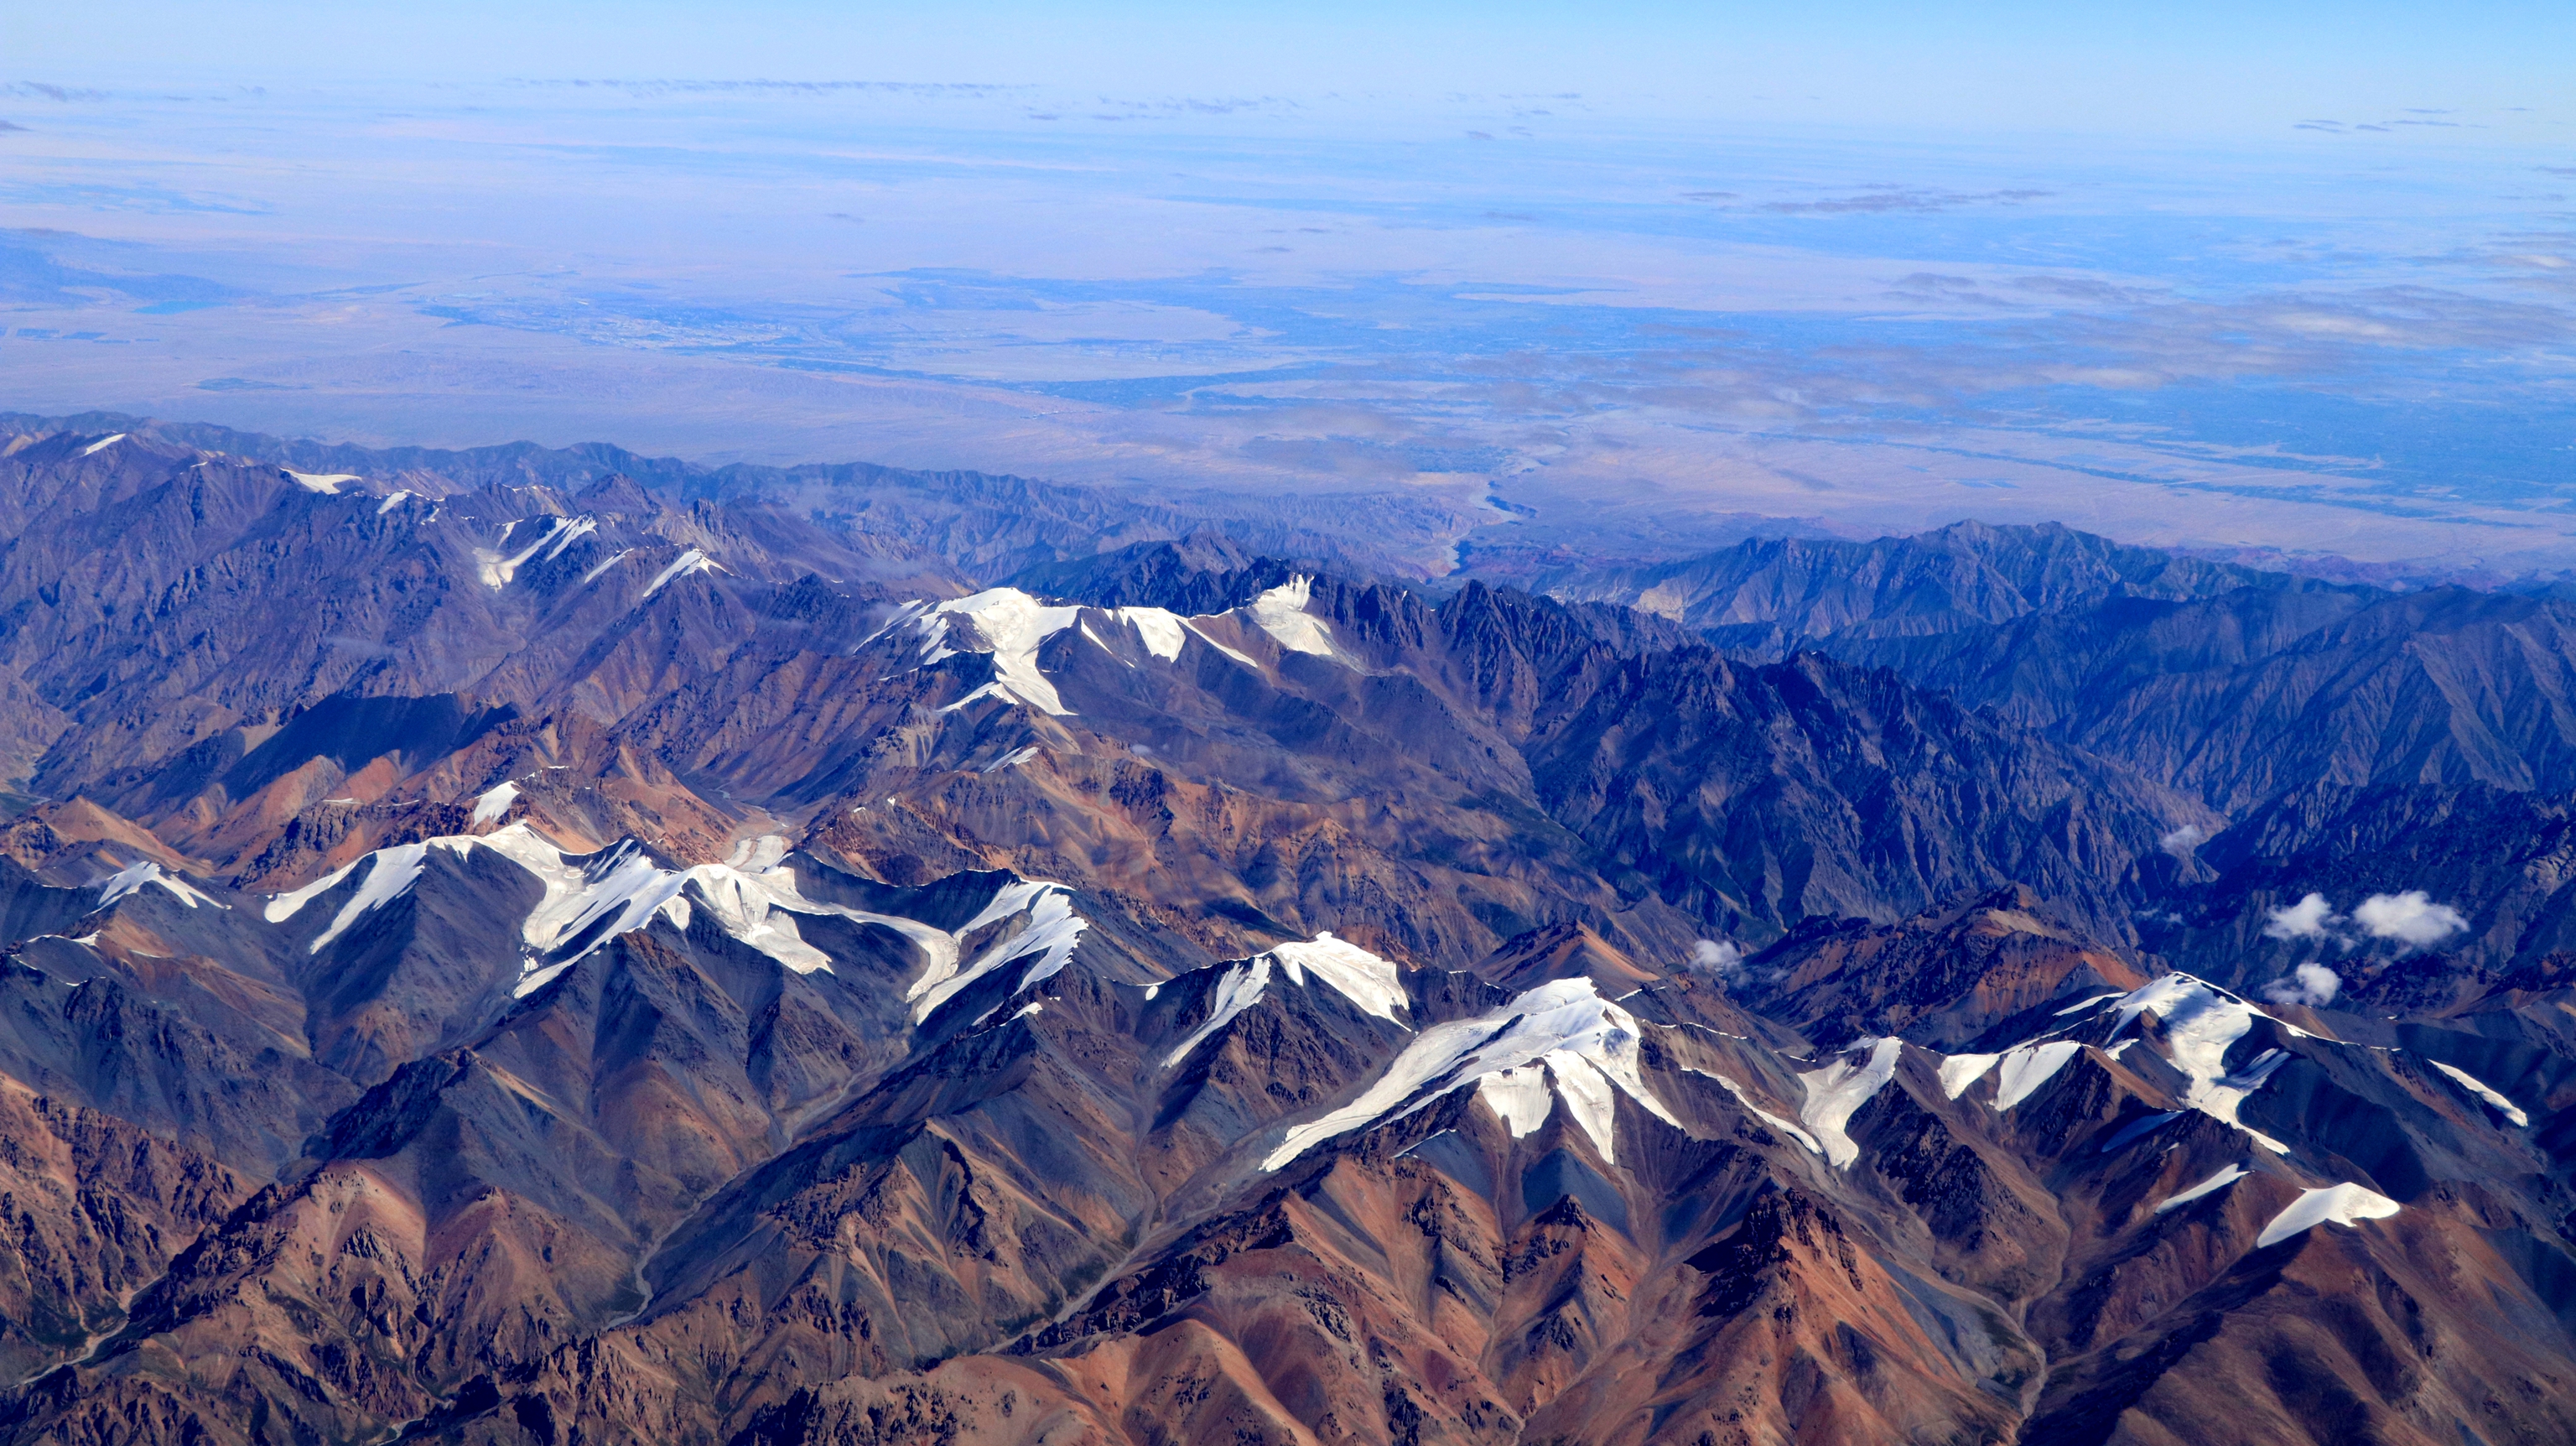 航空摄影 |俯瞰秀丽壮美山川,感受祖国的幅员辽阔